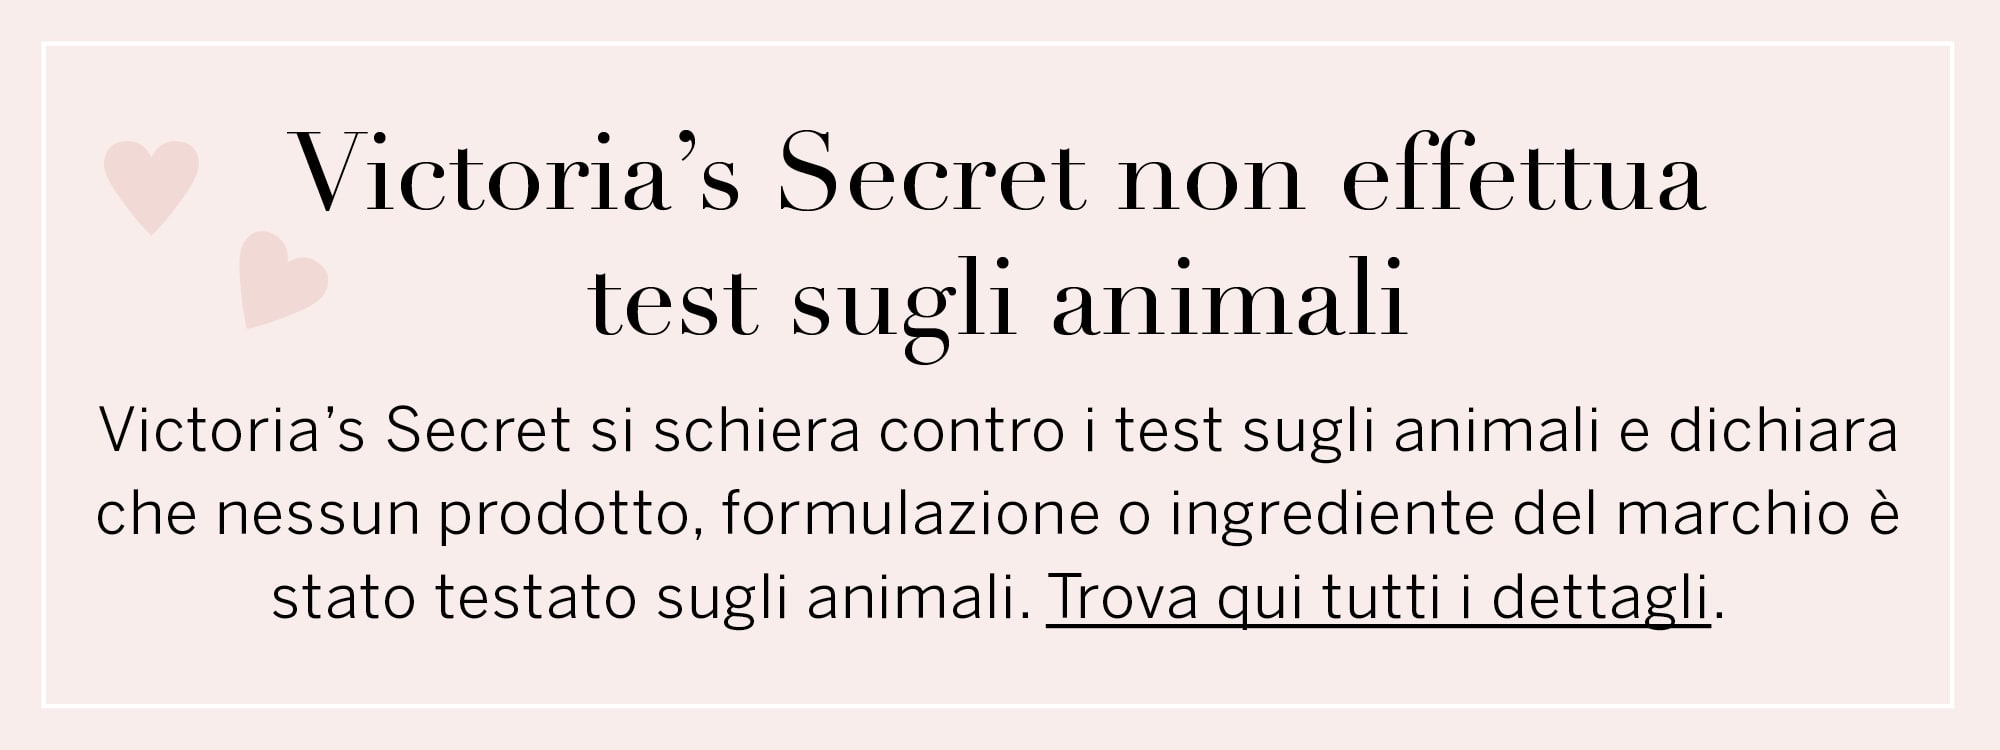 Victoria’s Secret non effettua test sugli animali